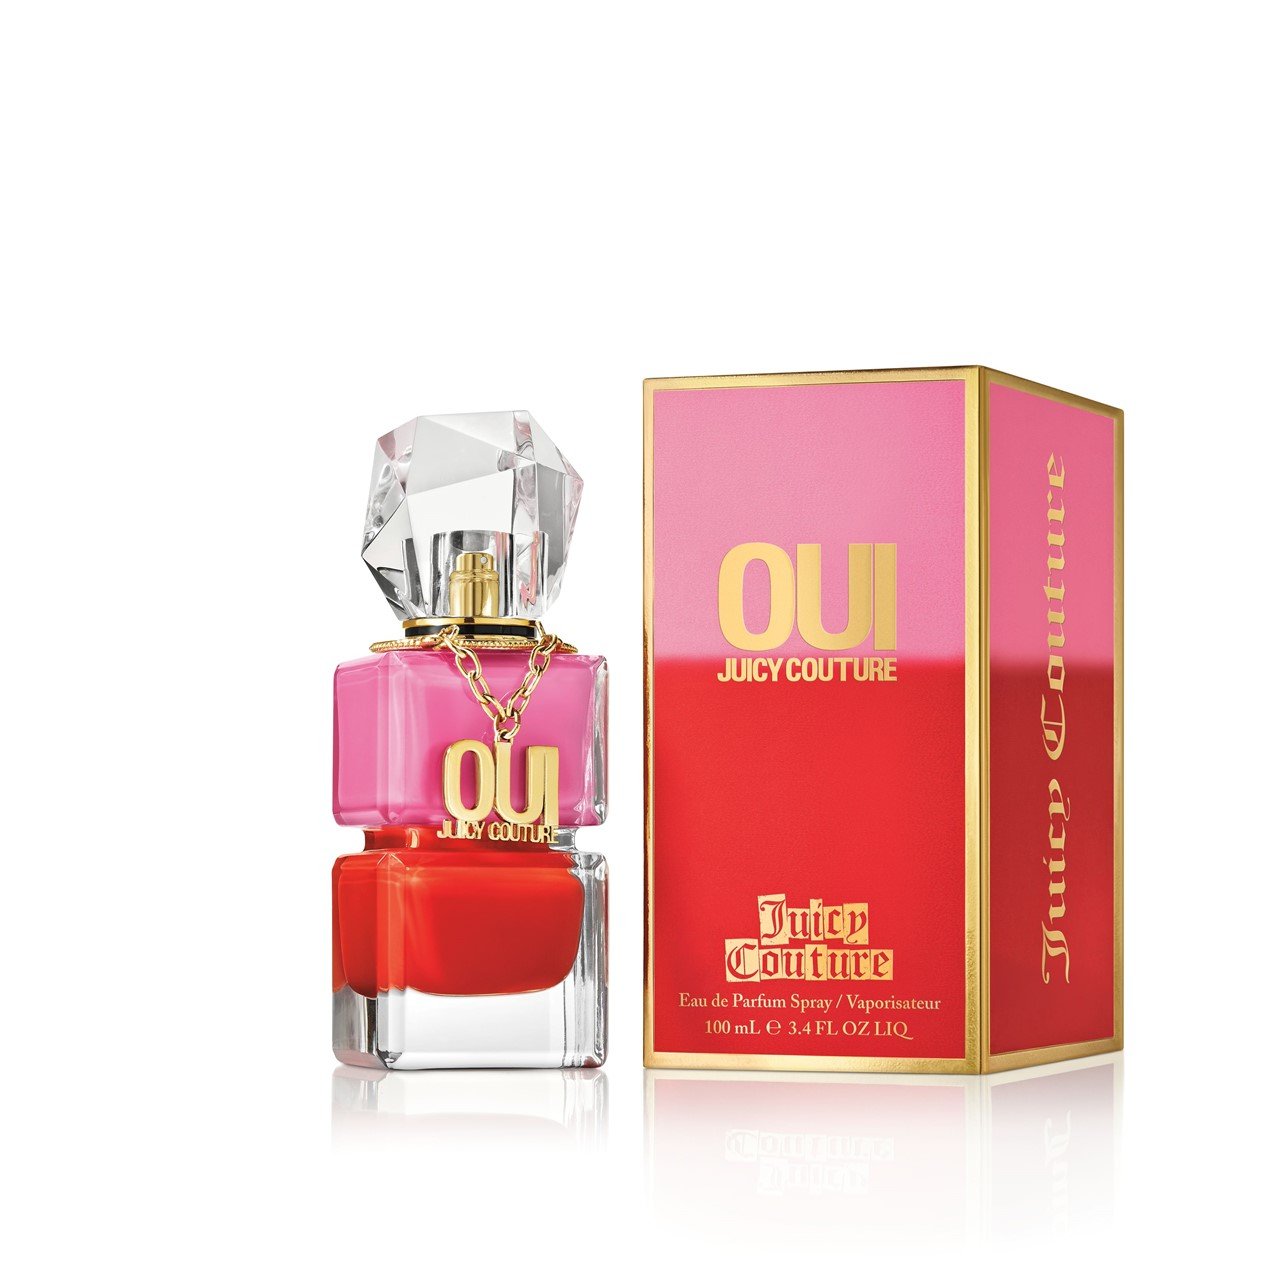 Juicy Couture Oui Eau de Parfum 100ml (3.4fl oz)